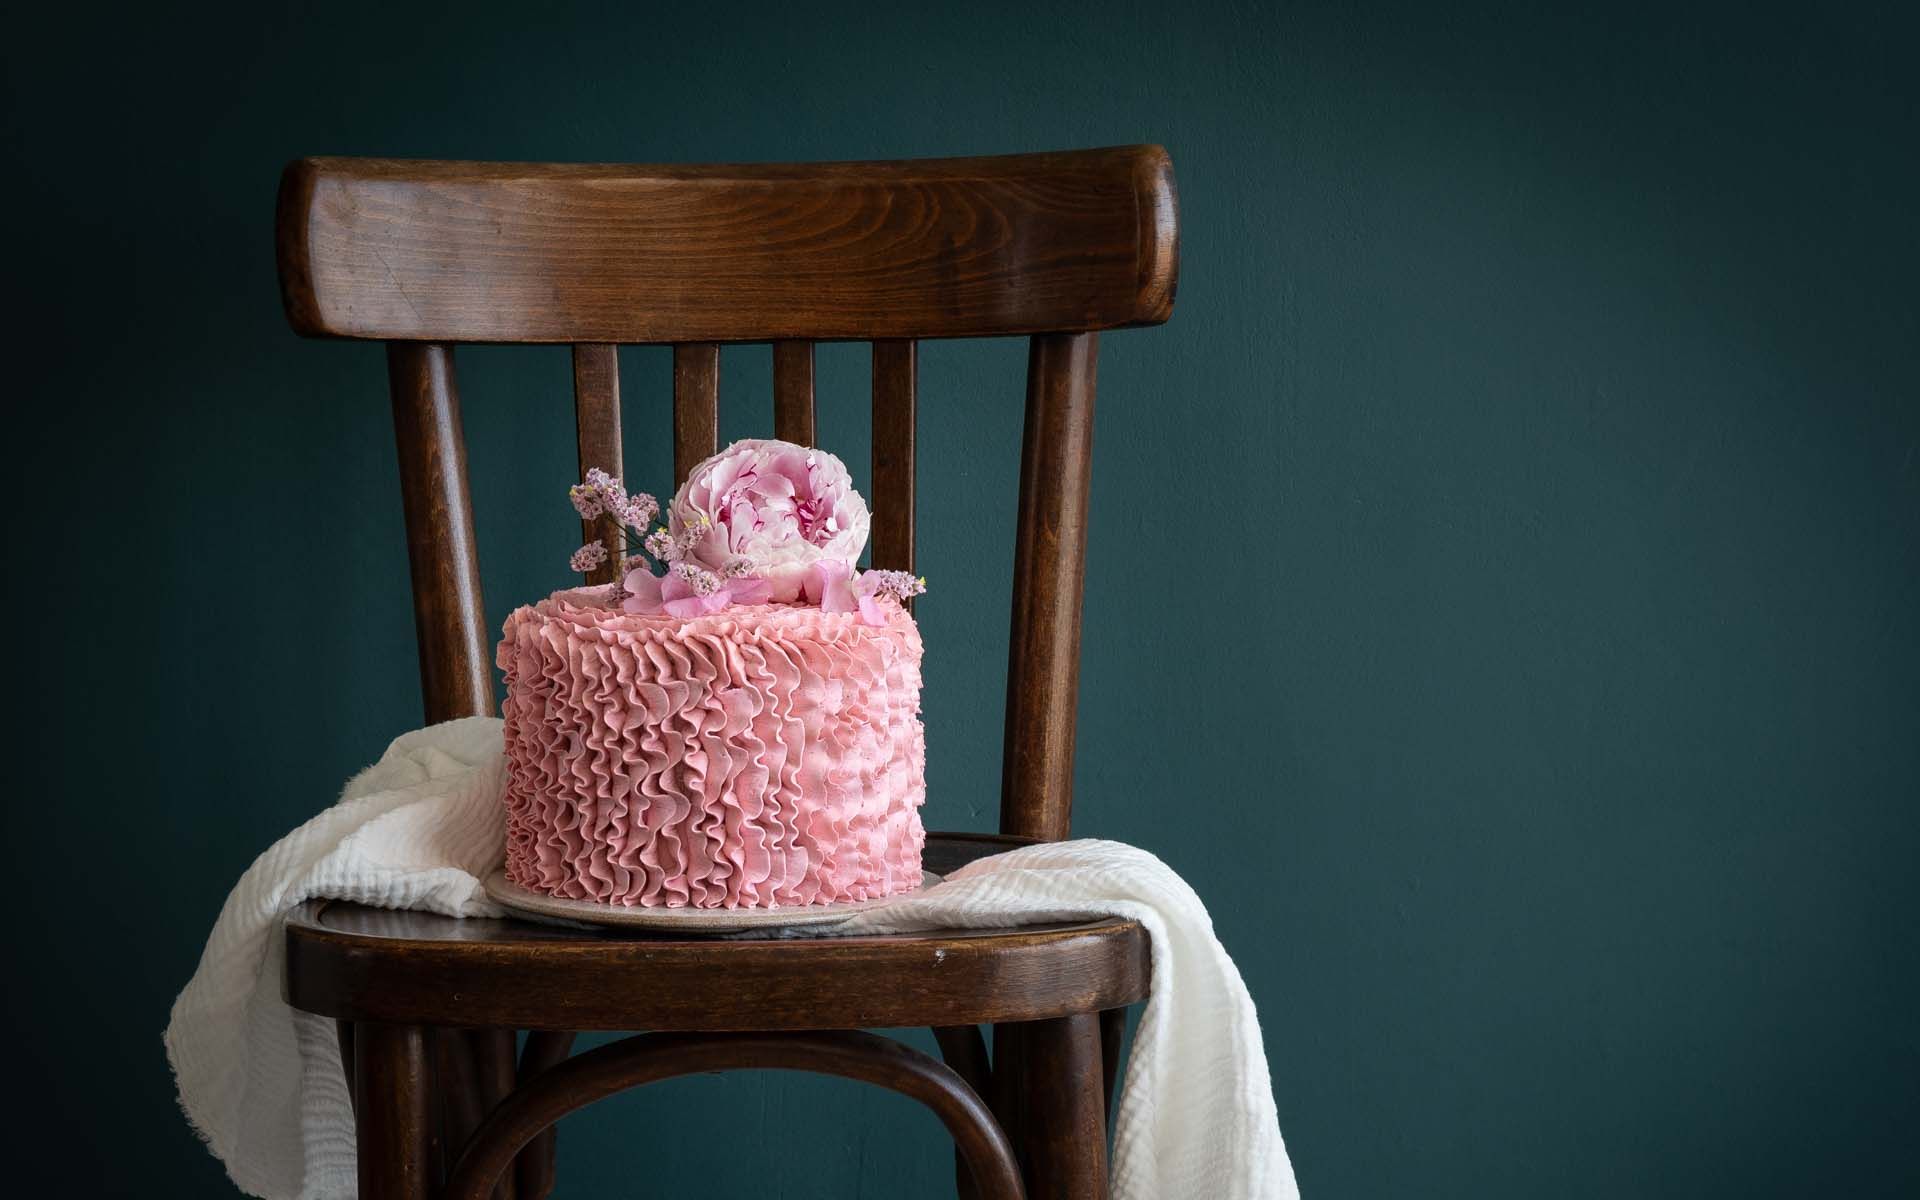 Gâteau de demi-anniversaire vanille framboise : Il était une fois